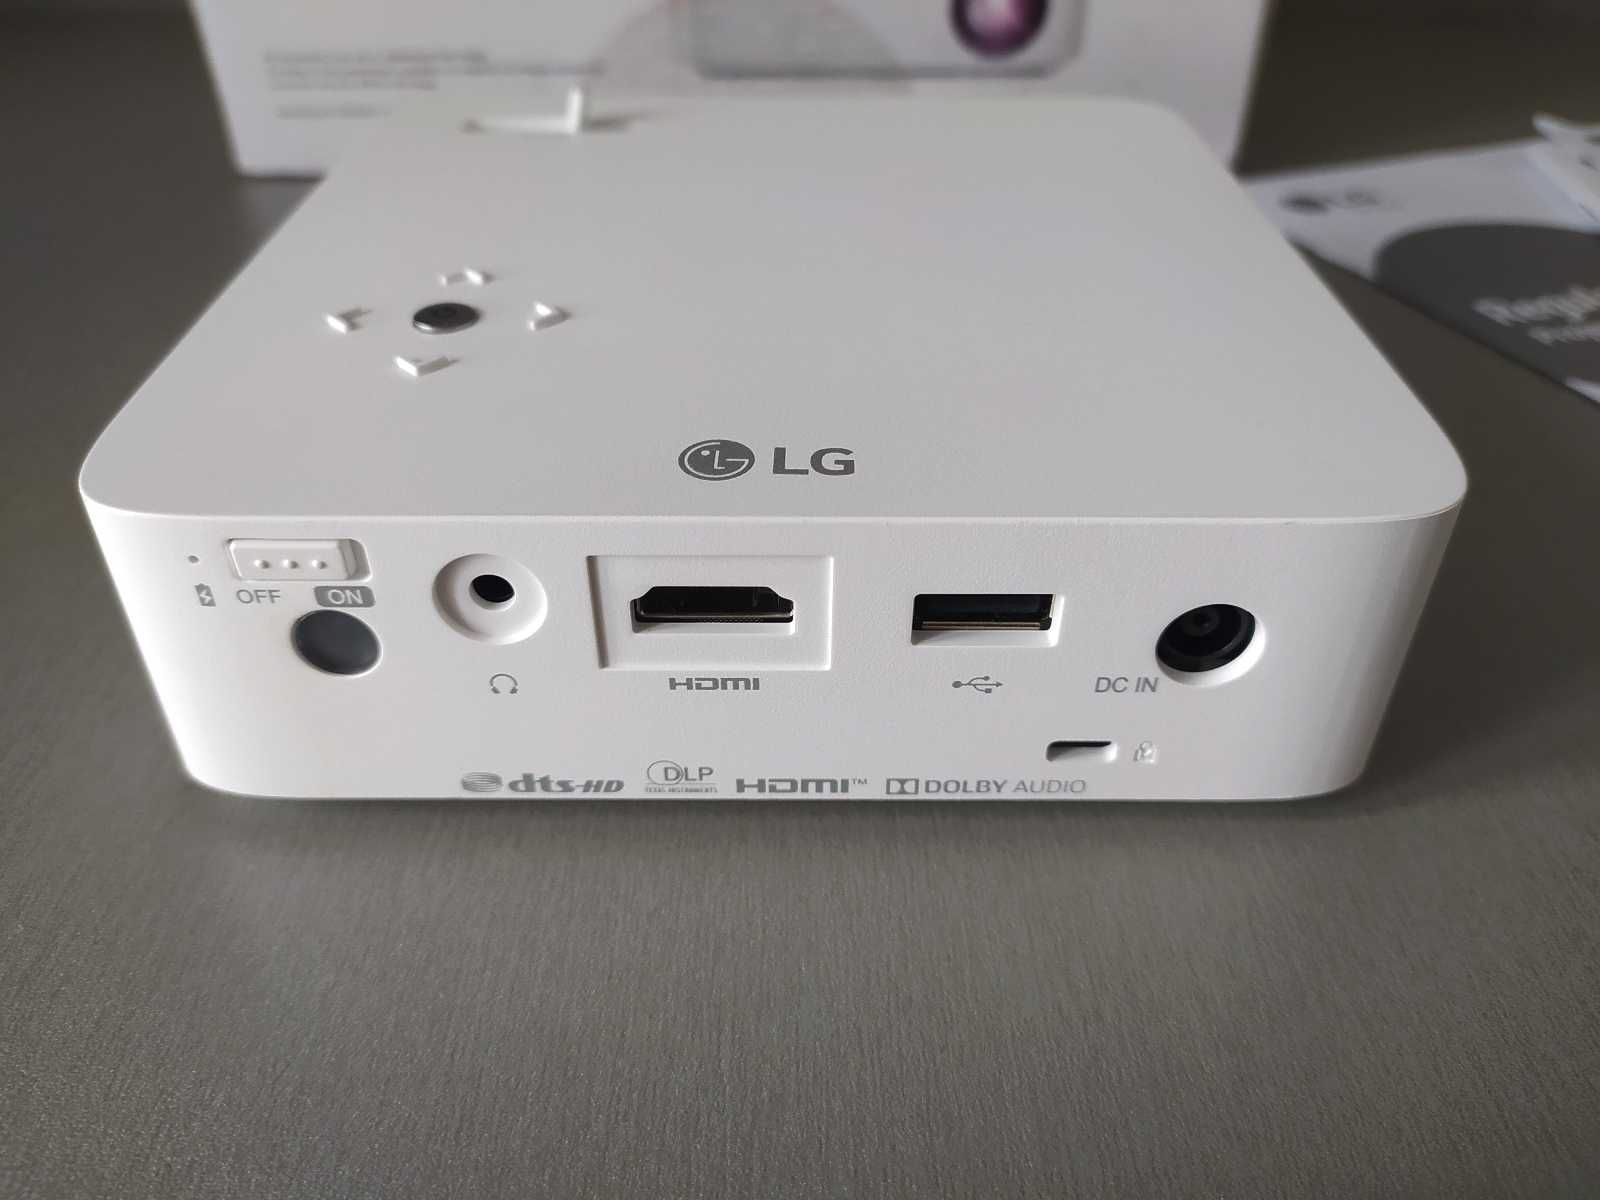 DLP LED портативний проектор LG PH30N. Акум. Wi-Fi/Bluetooth. Як новий